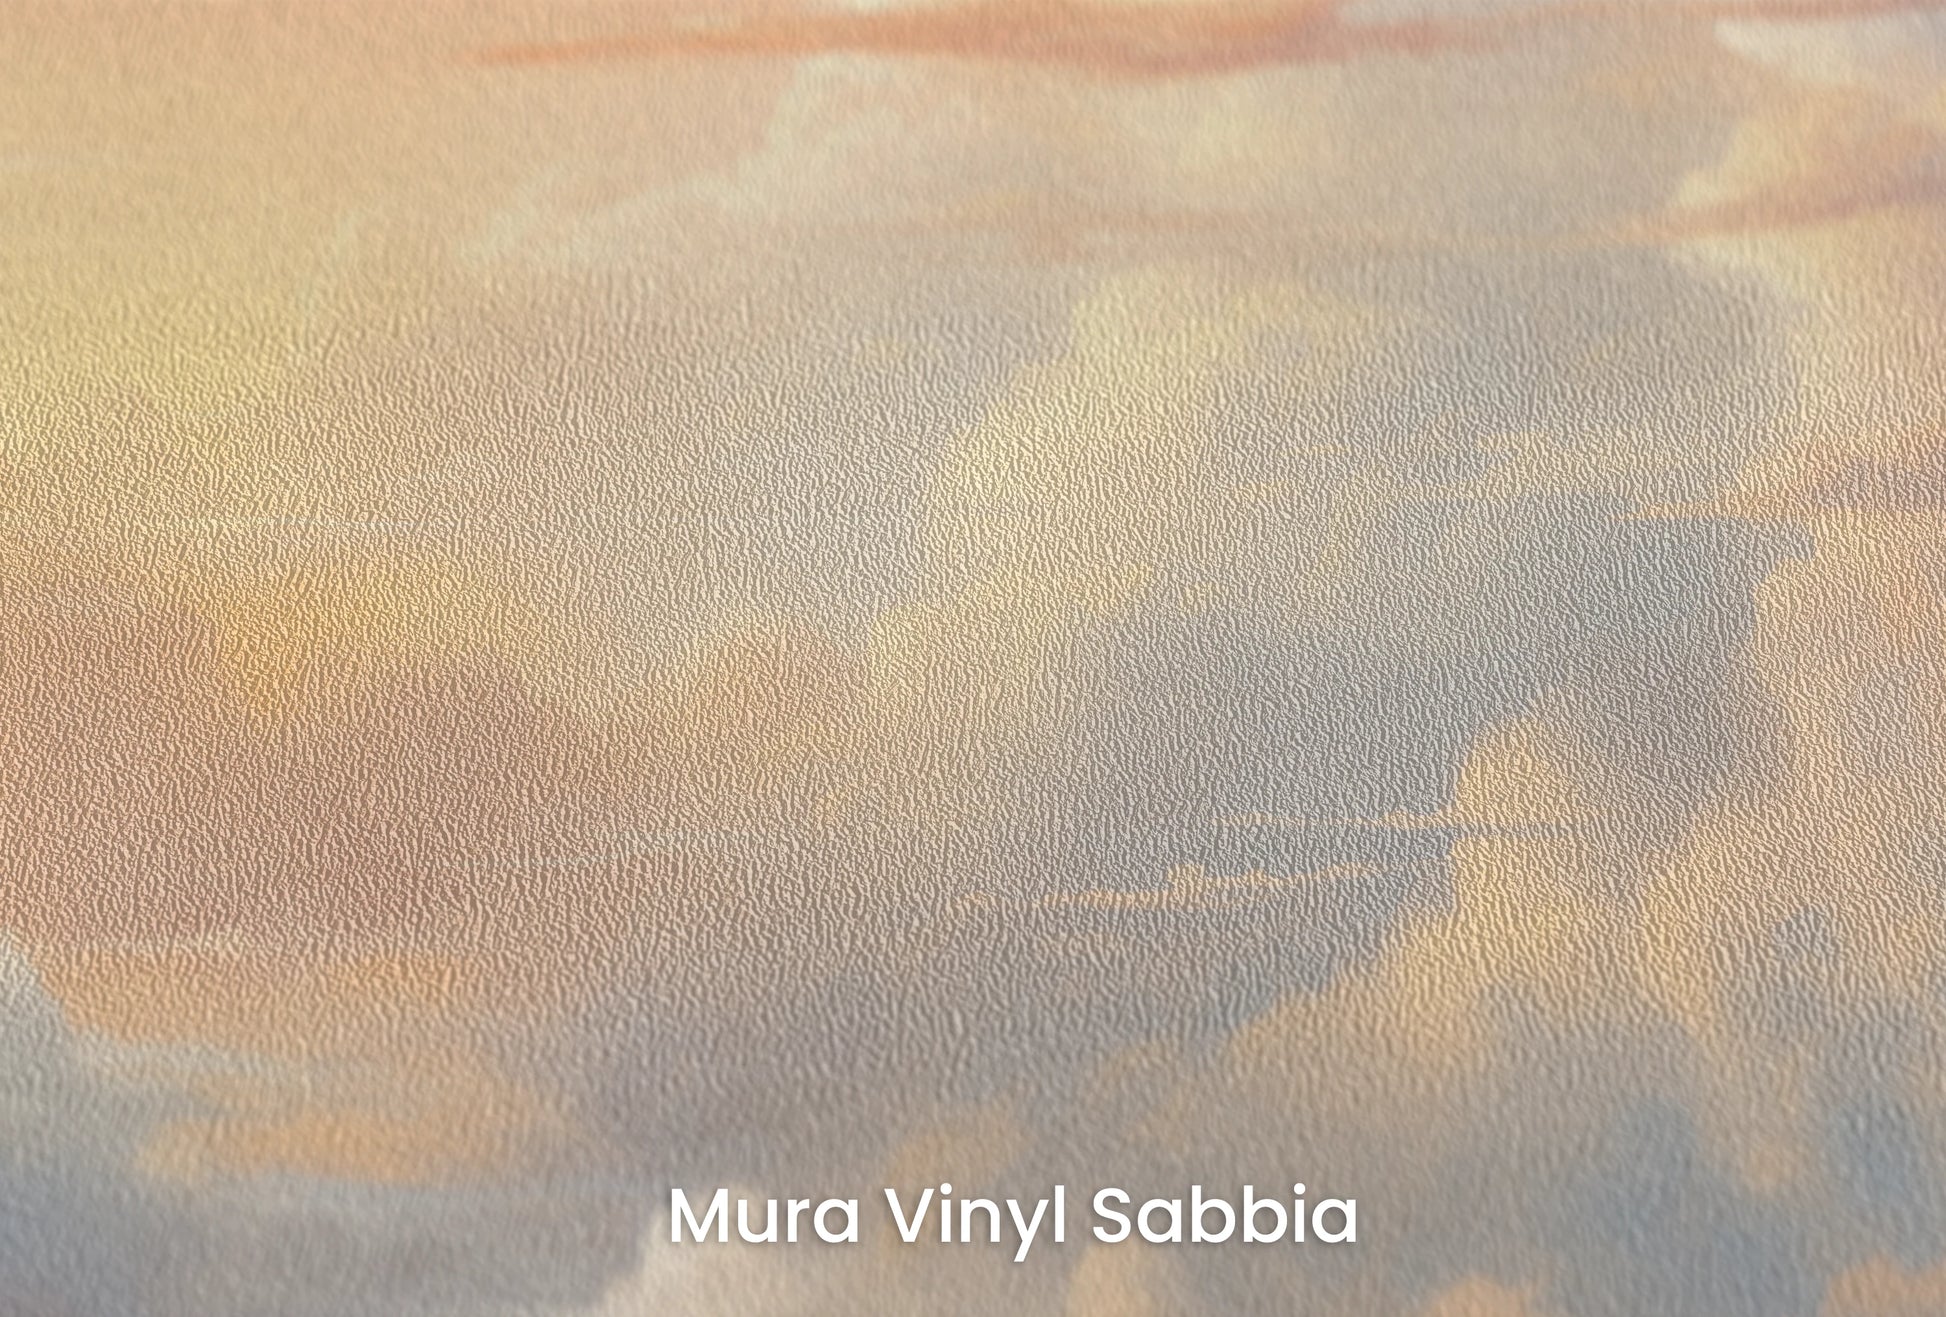 Zbliżenie na artystyczną fototapetę o nazwie Golden Serenity na podłożu Mura Vinyl Sabbia struktura grubego ziarna piasku.